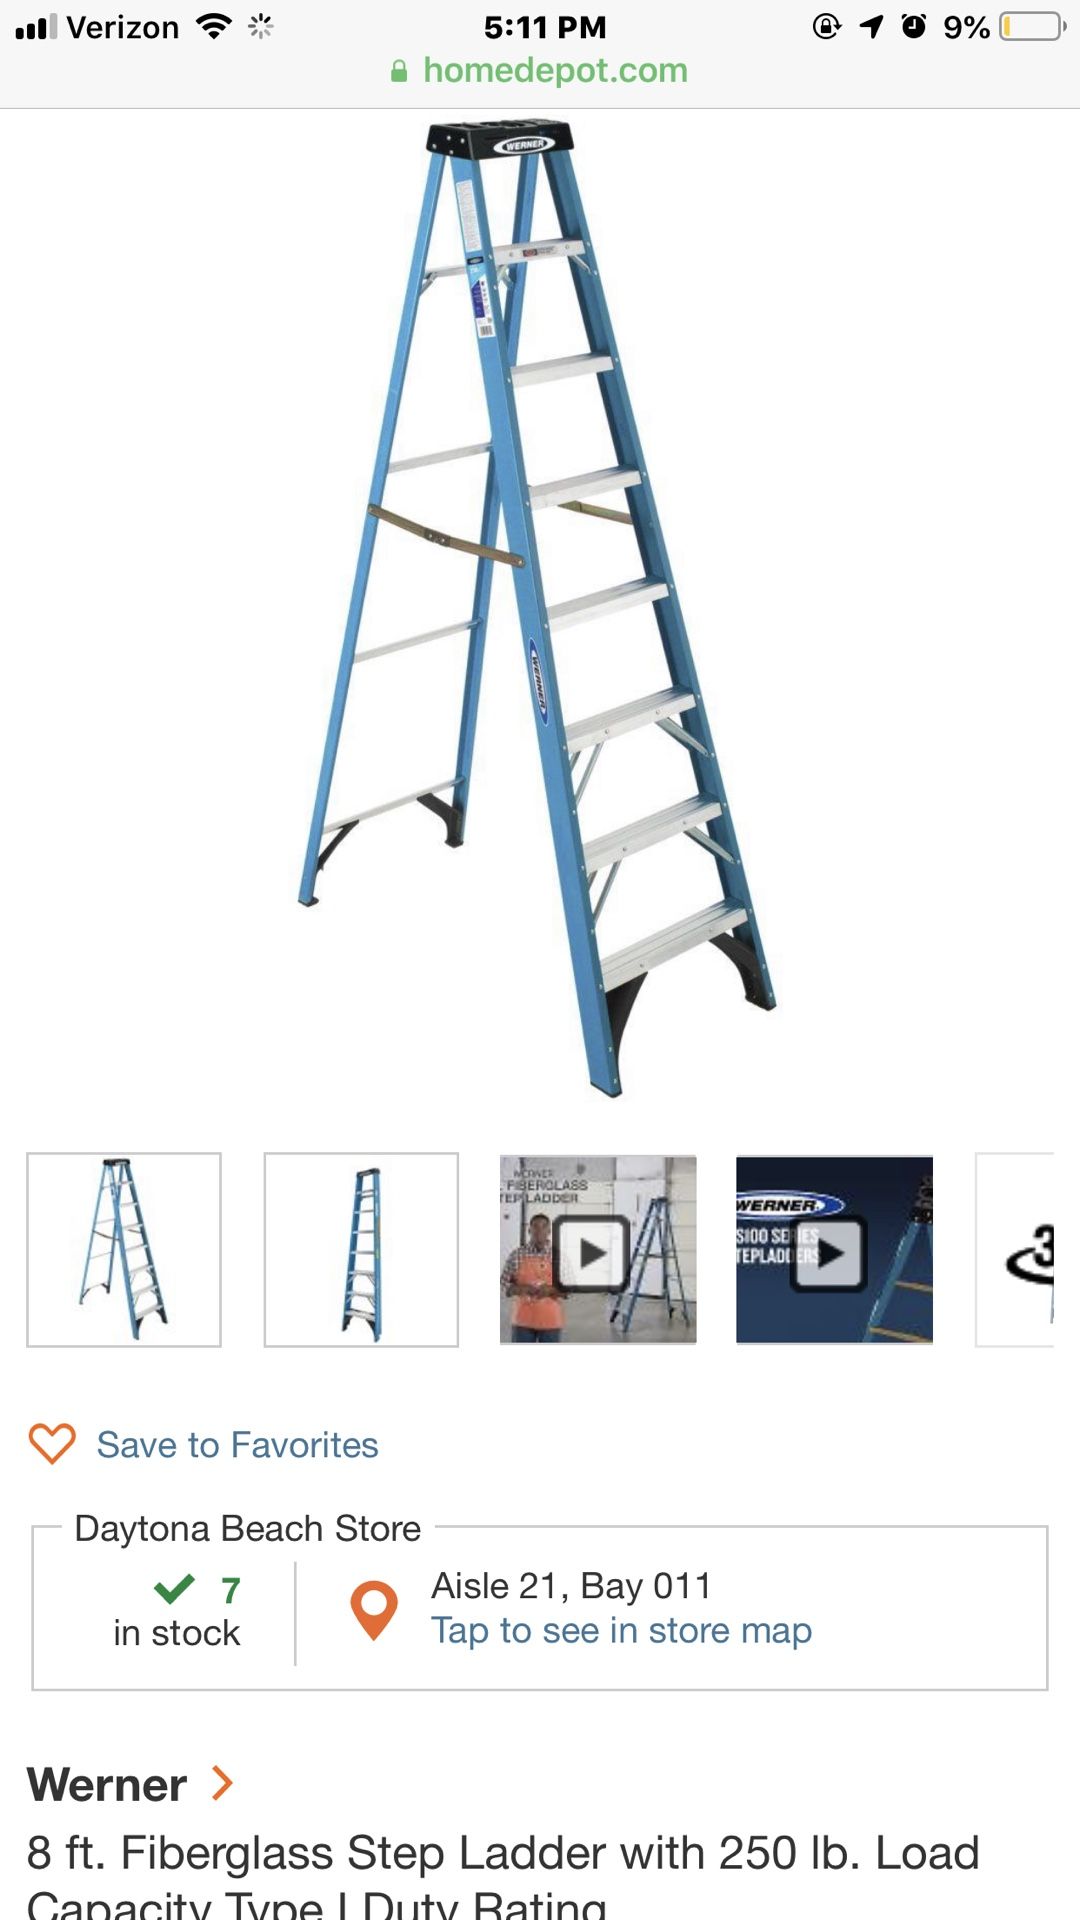 Werner 8ft ladder firberglass